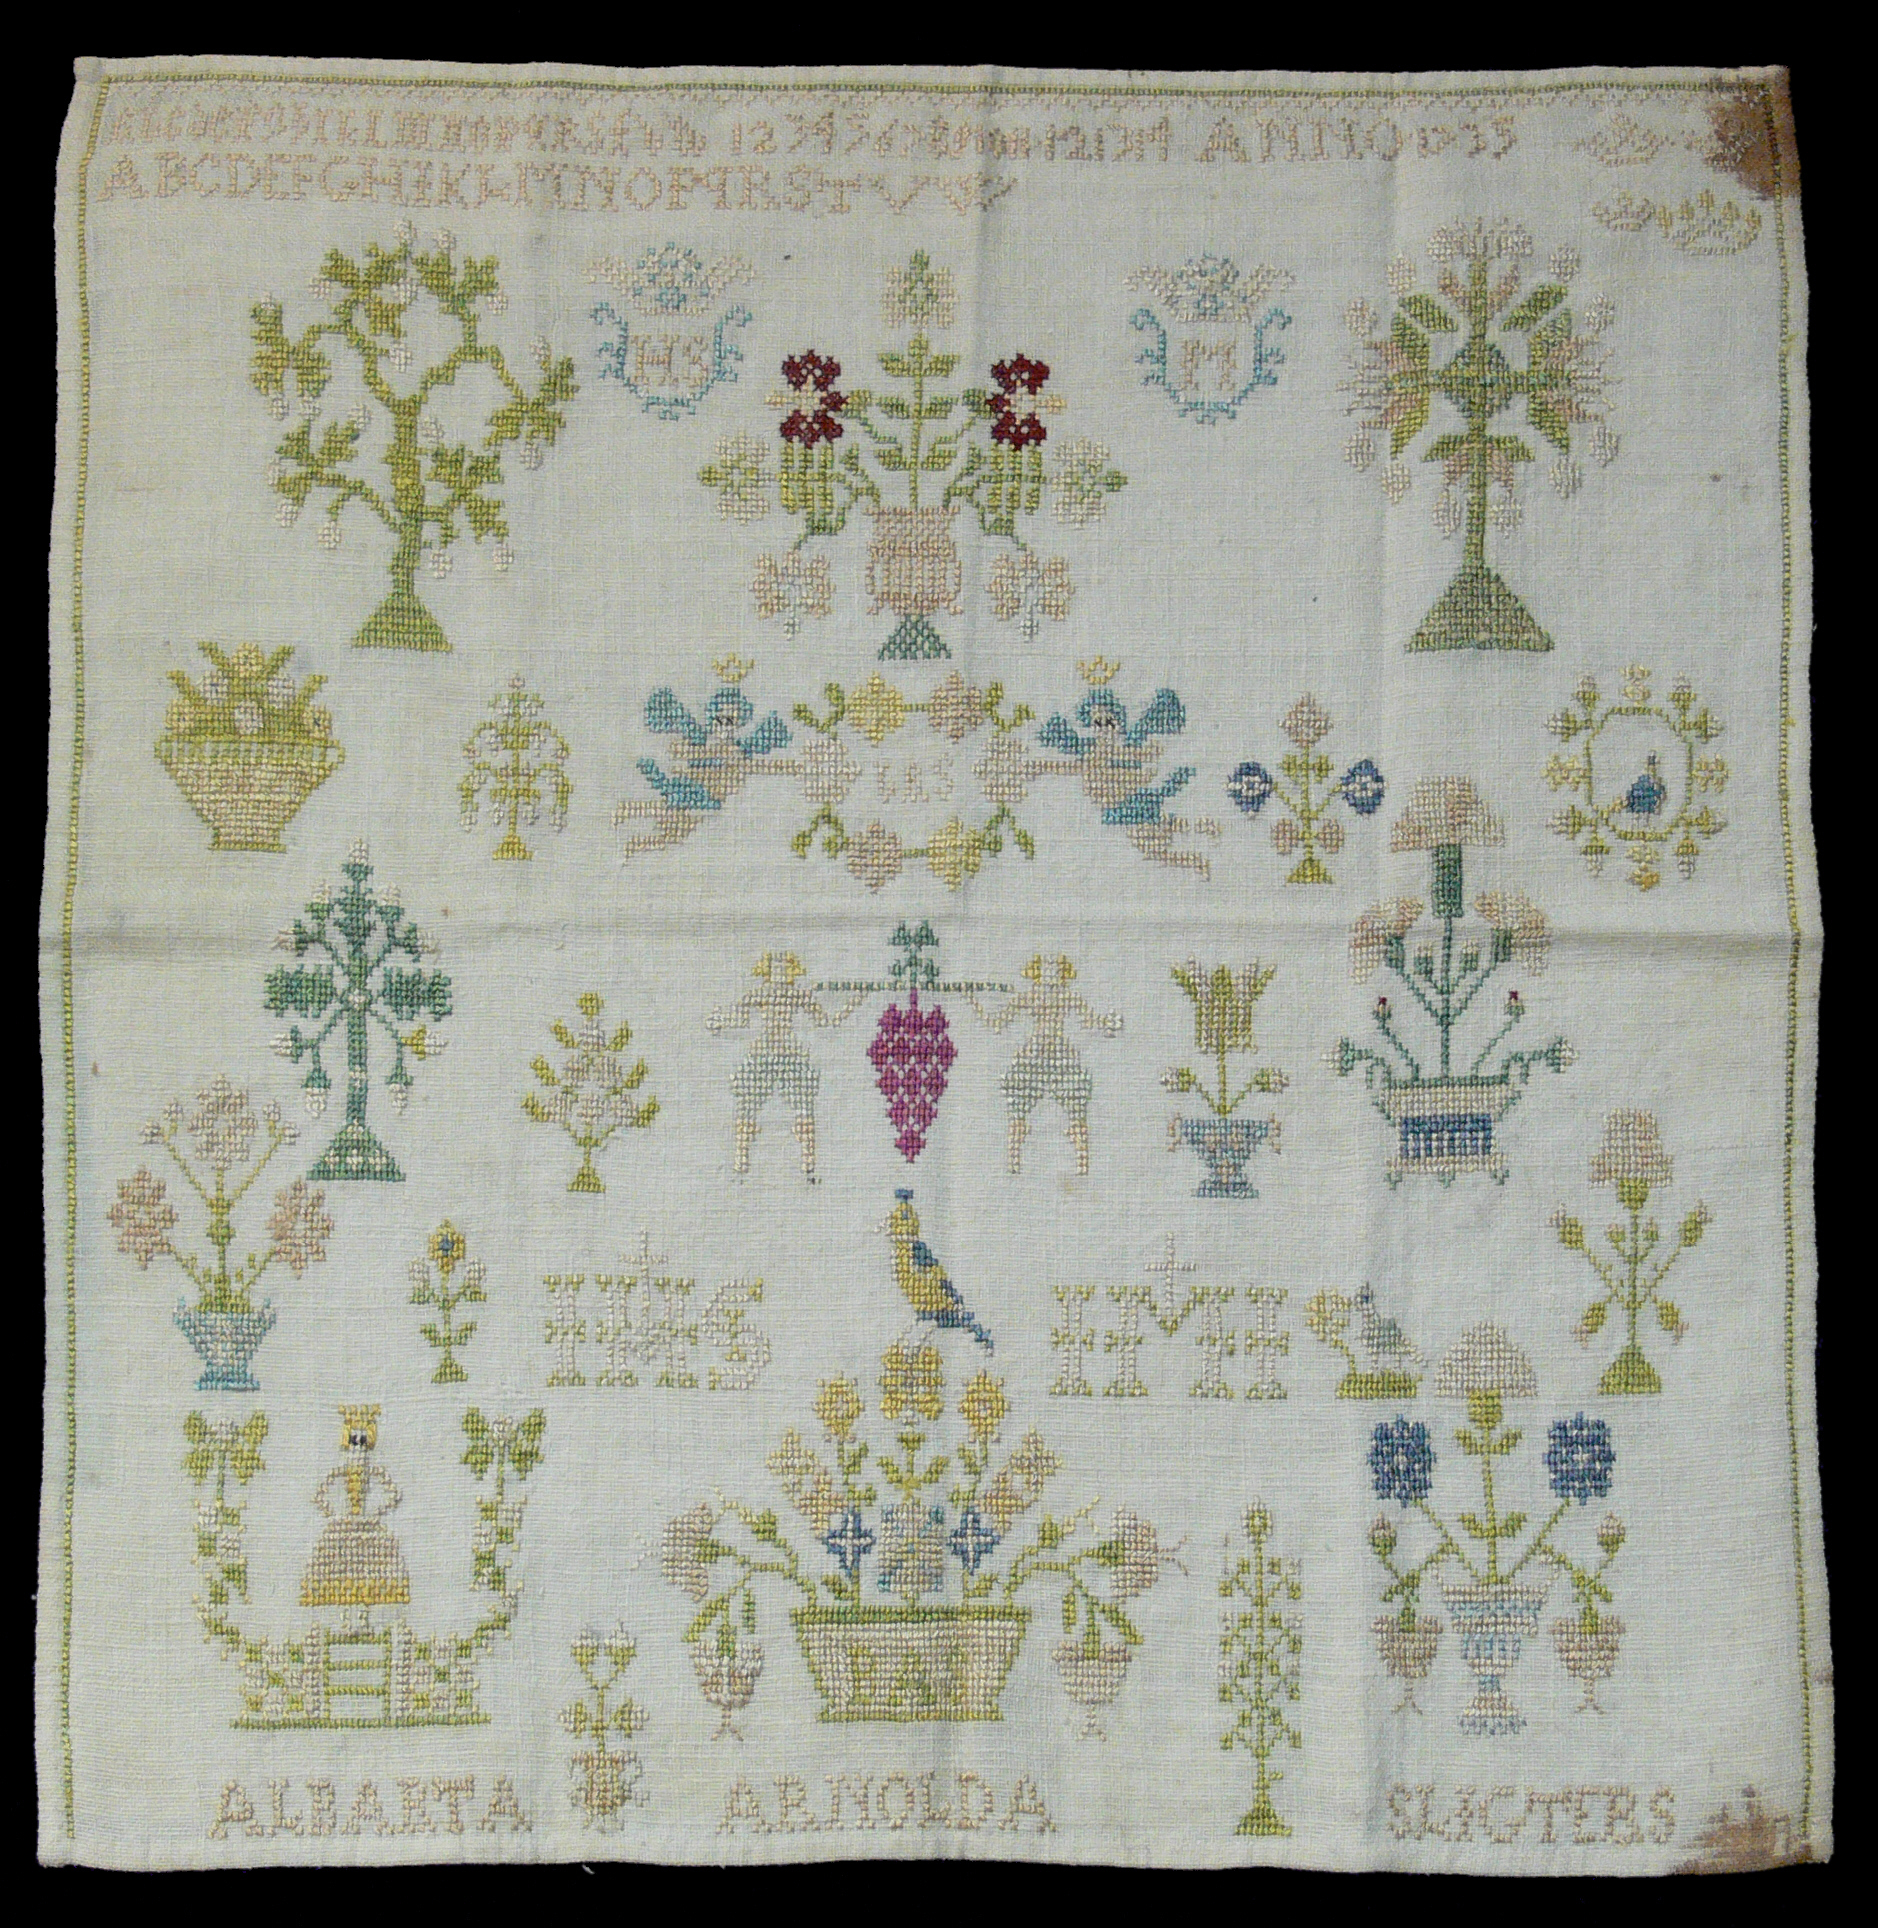 English Embroidery Patterns Cross Stitch Wikipedia